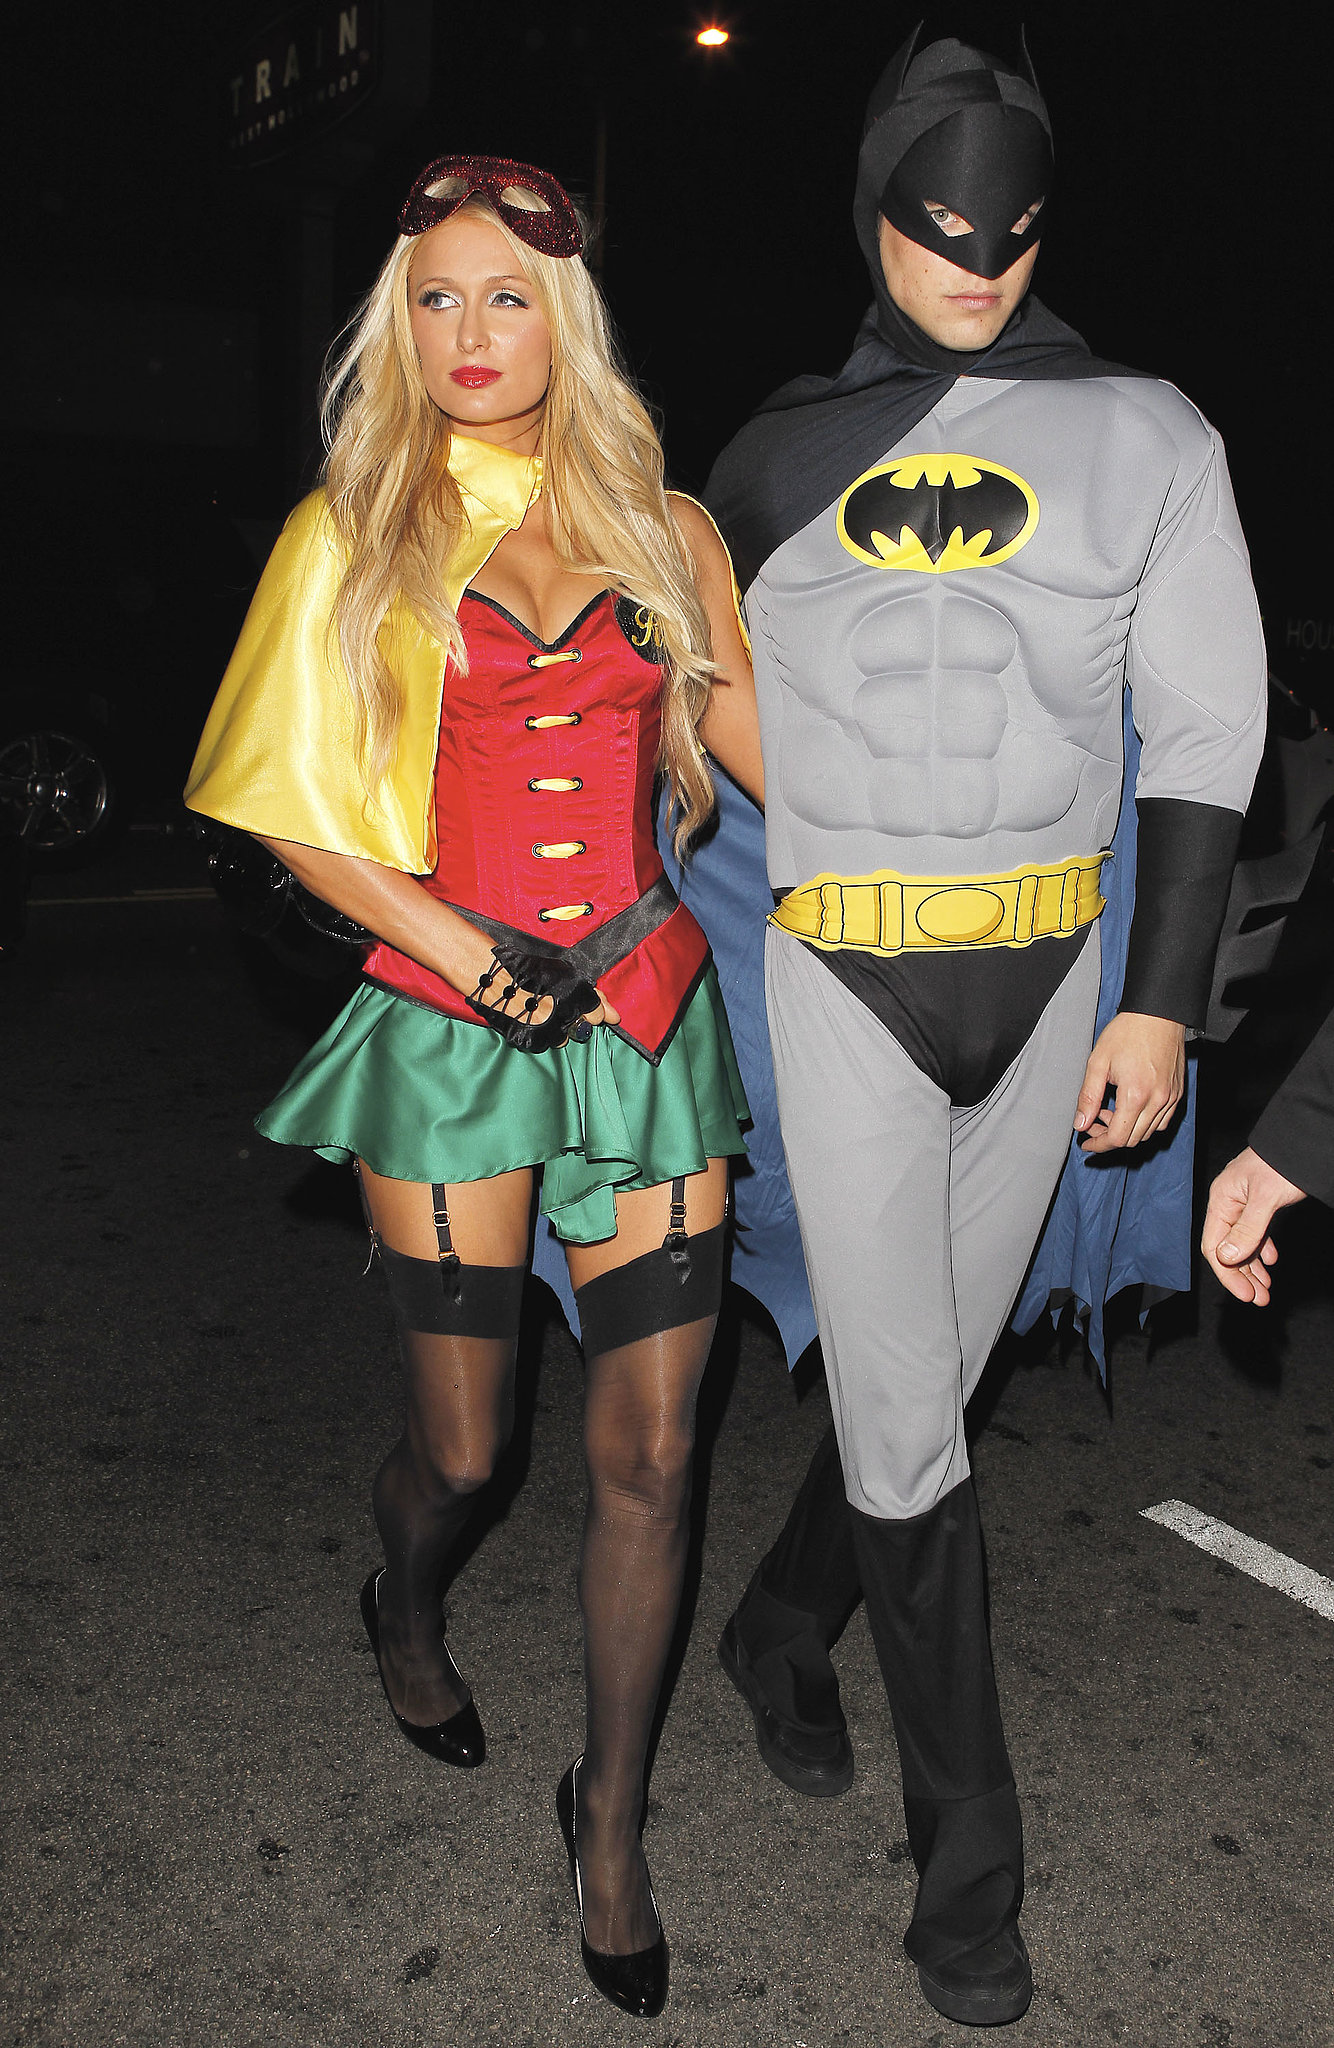 Paris Hilton and River Viiperi as Robin and Batman